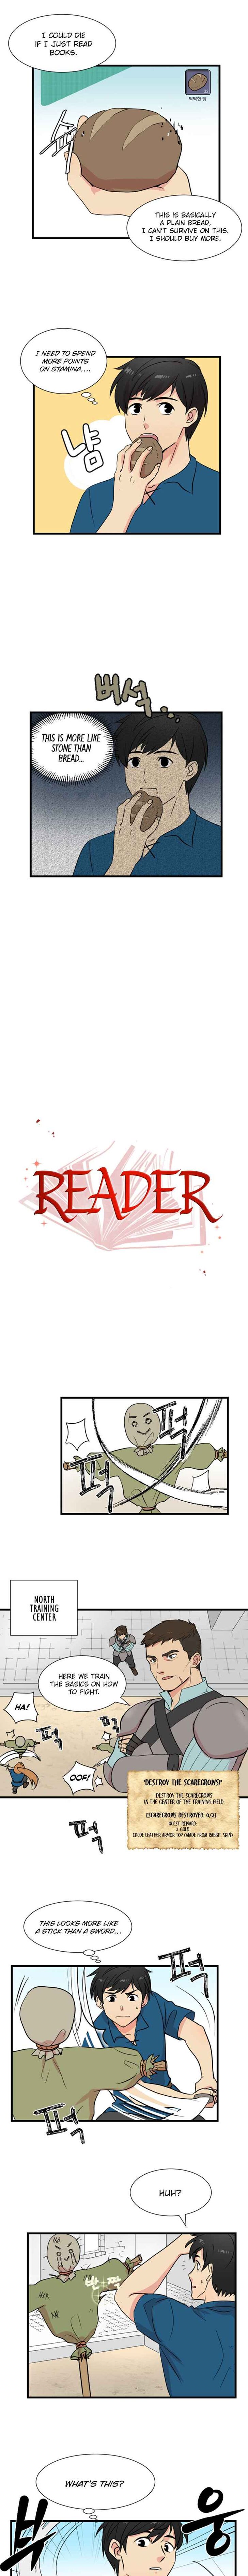 Reader (Chang Han-Yoon) - Page 2